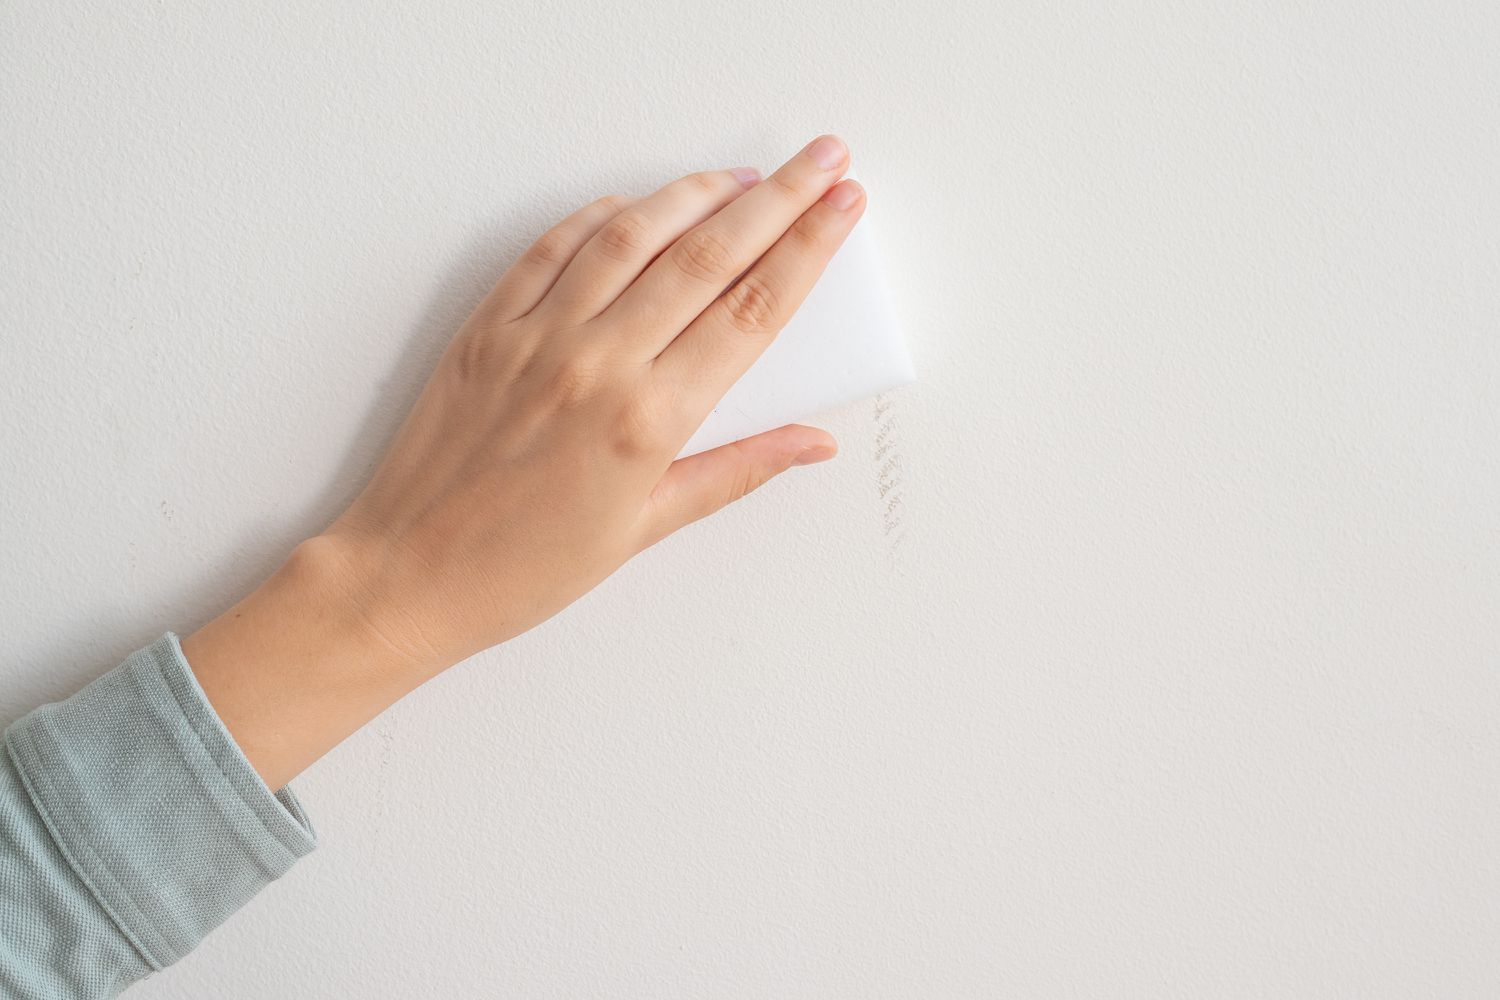 Magic eraser scrubbing white wall to remove scuff mark